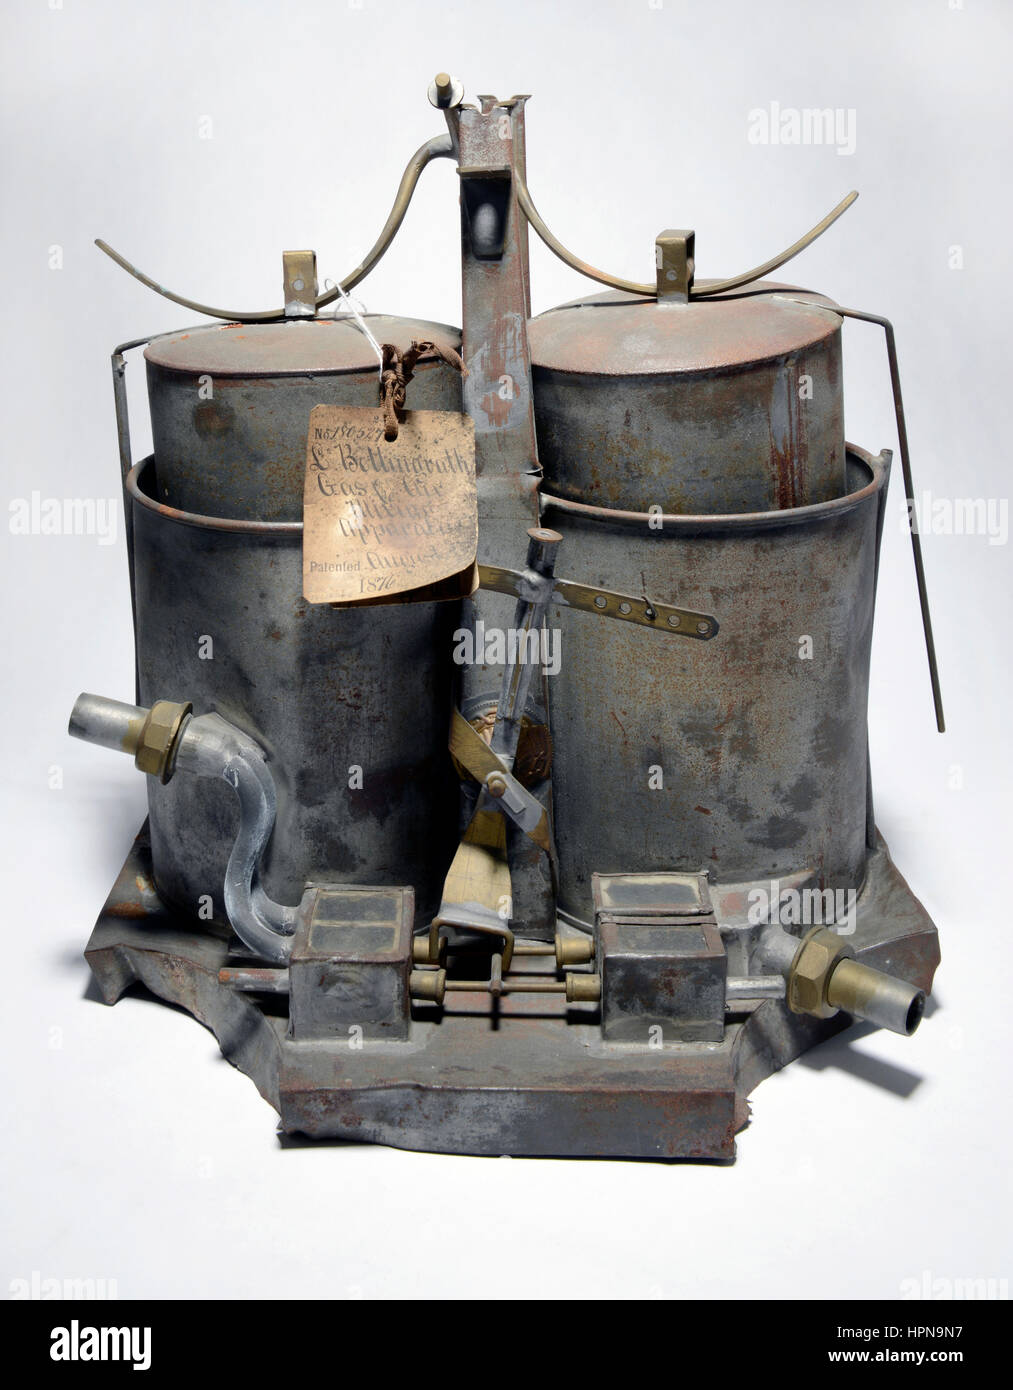 Patent-Modell: Gas und Luft mischen Apparat von L Bettingrath erfunden.  Patent # 180527 gewährt 1. August 1876. Stockfoto